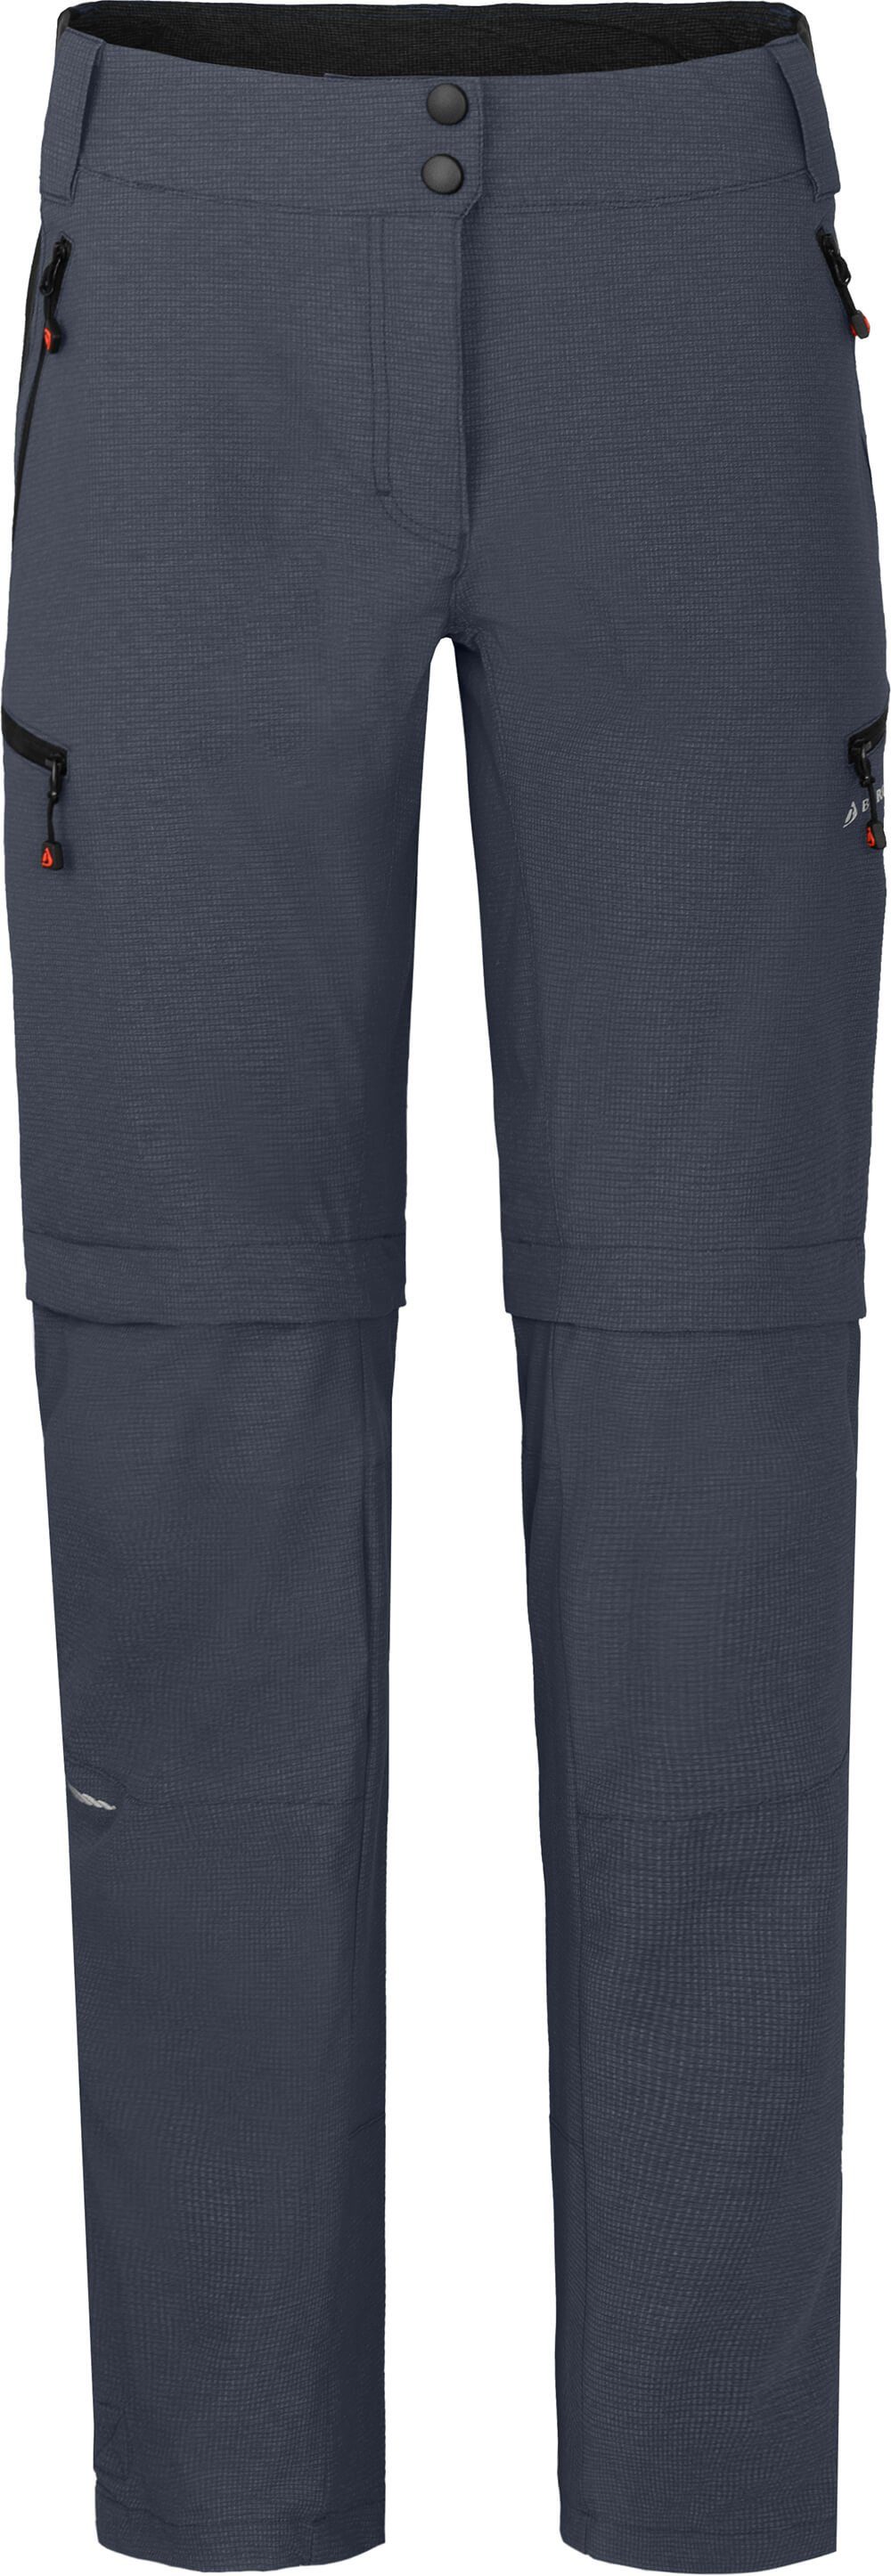 Bergson Zip-off-Hose VALLI zip-off Damen Radhose, robust elastisch, Kurzgrößen, grau/blau